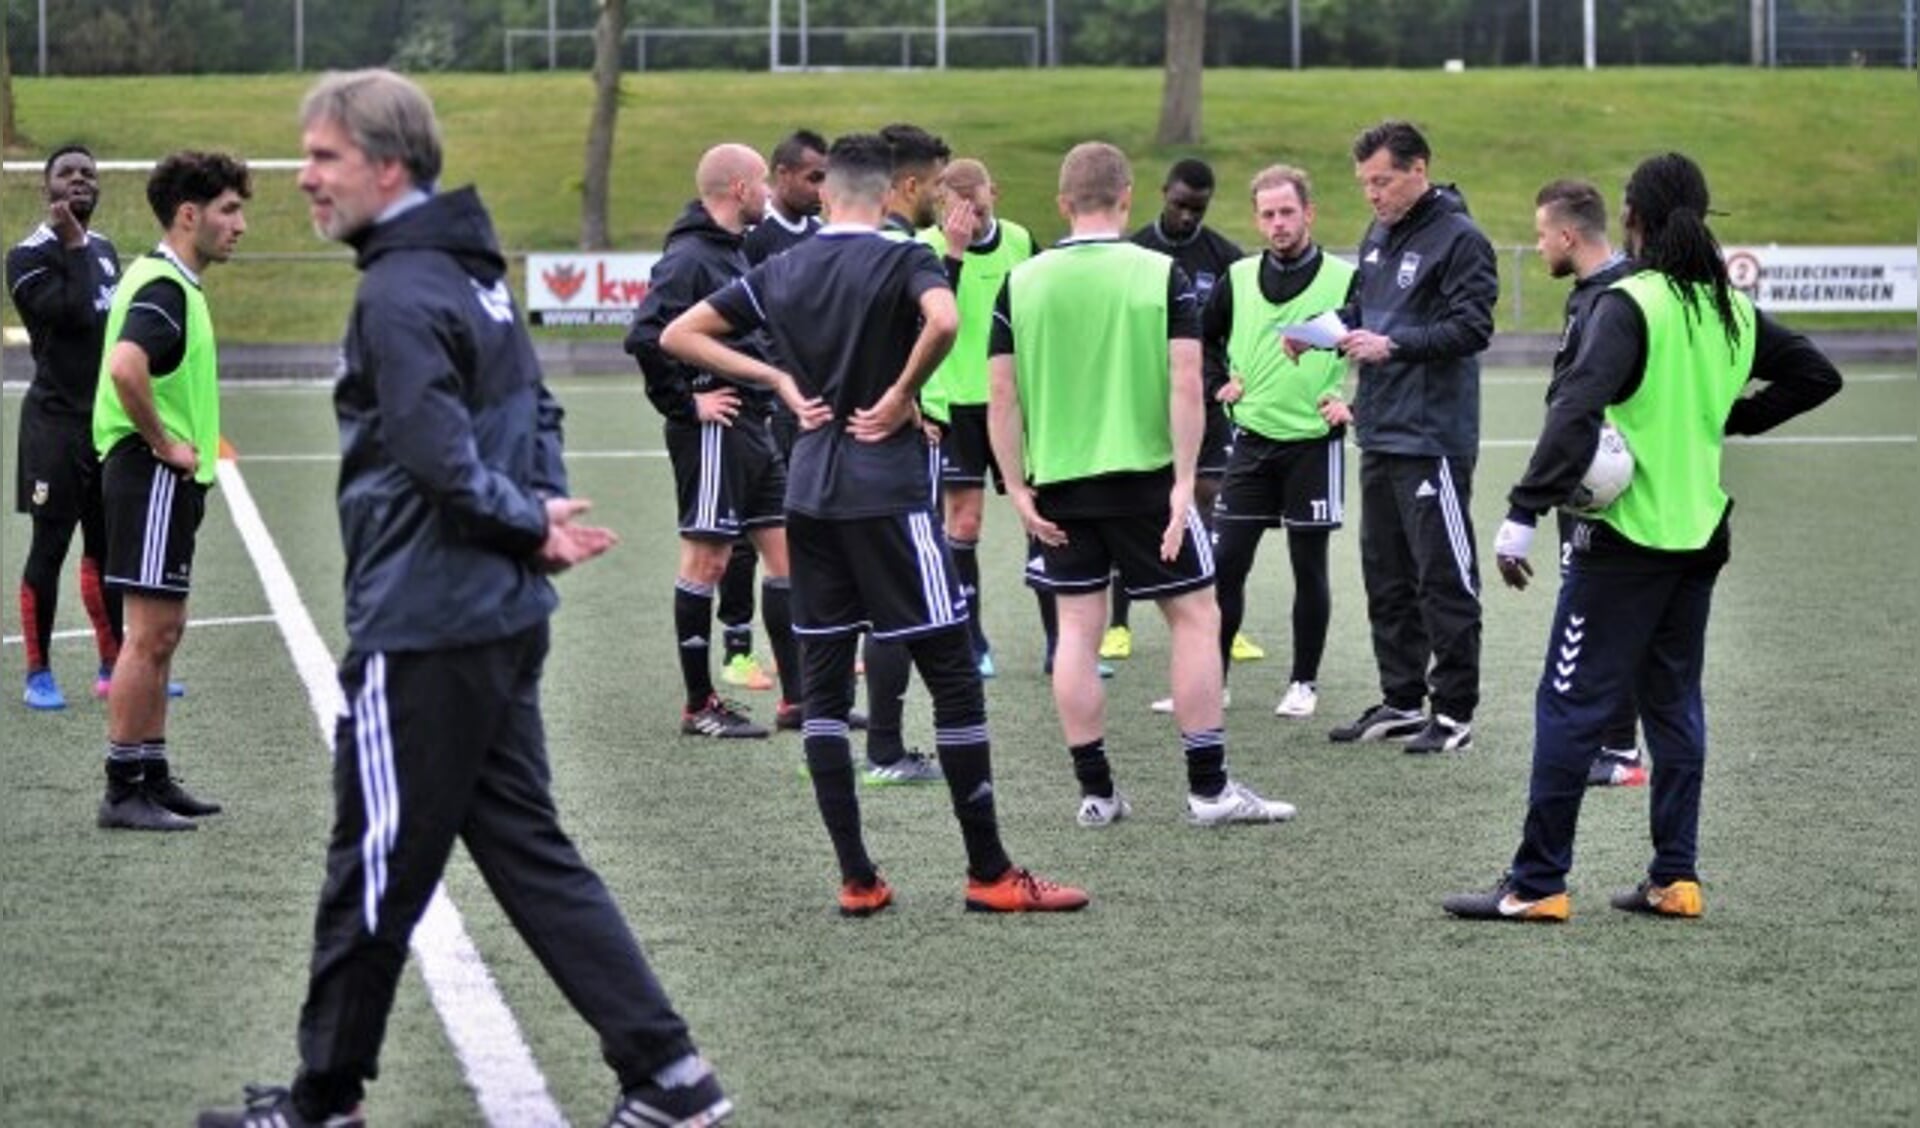 De nieuwe trainer Jan Oosterhuis (rechts), voormalig FC Wageningen speler, nam al eerder als technisch adviseur, een training over van de nu ontslagen Lodewijk de Kruif (voorgrond). (foto: gertbudding.nl)